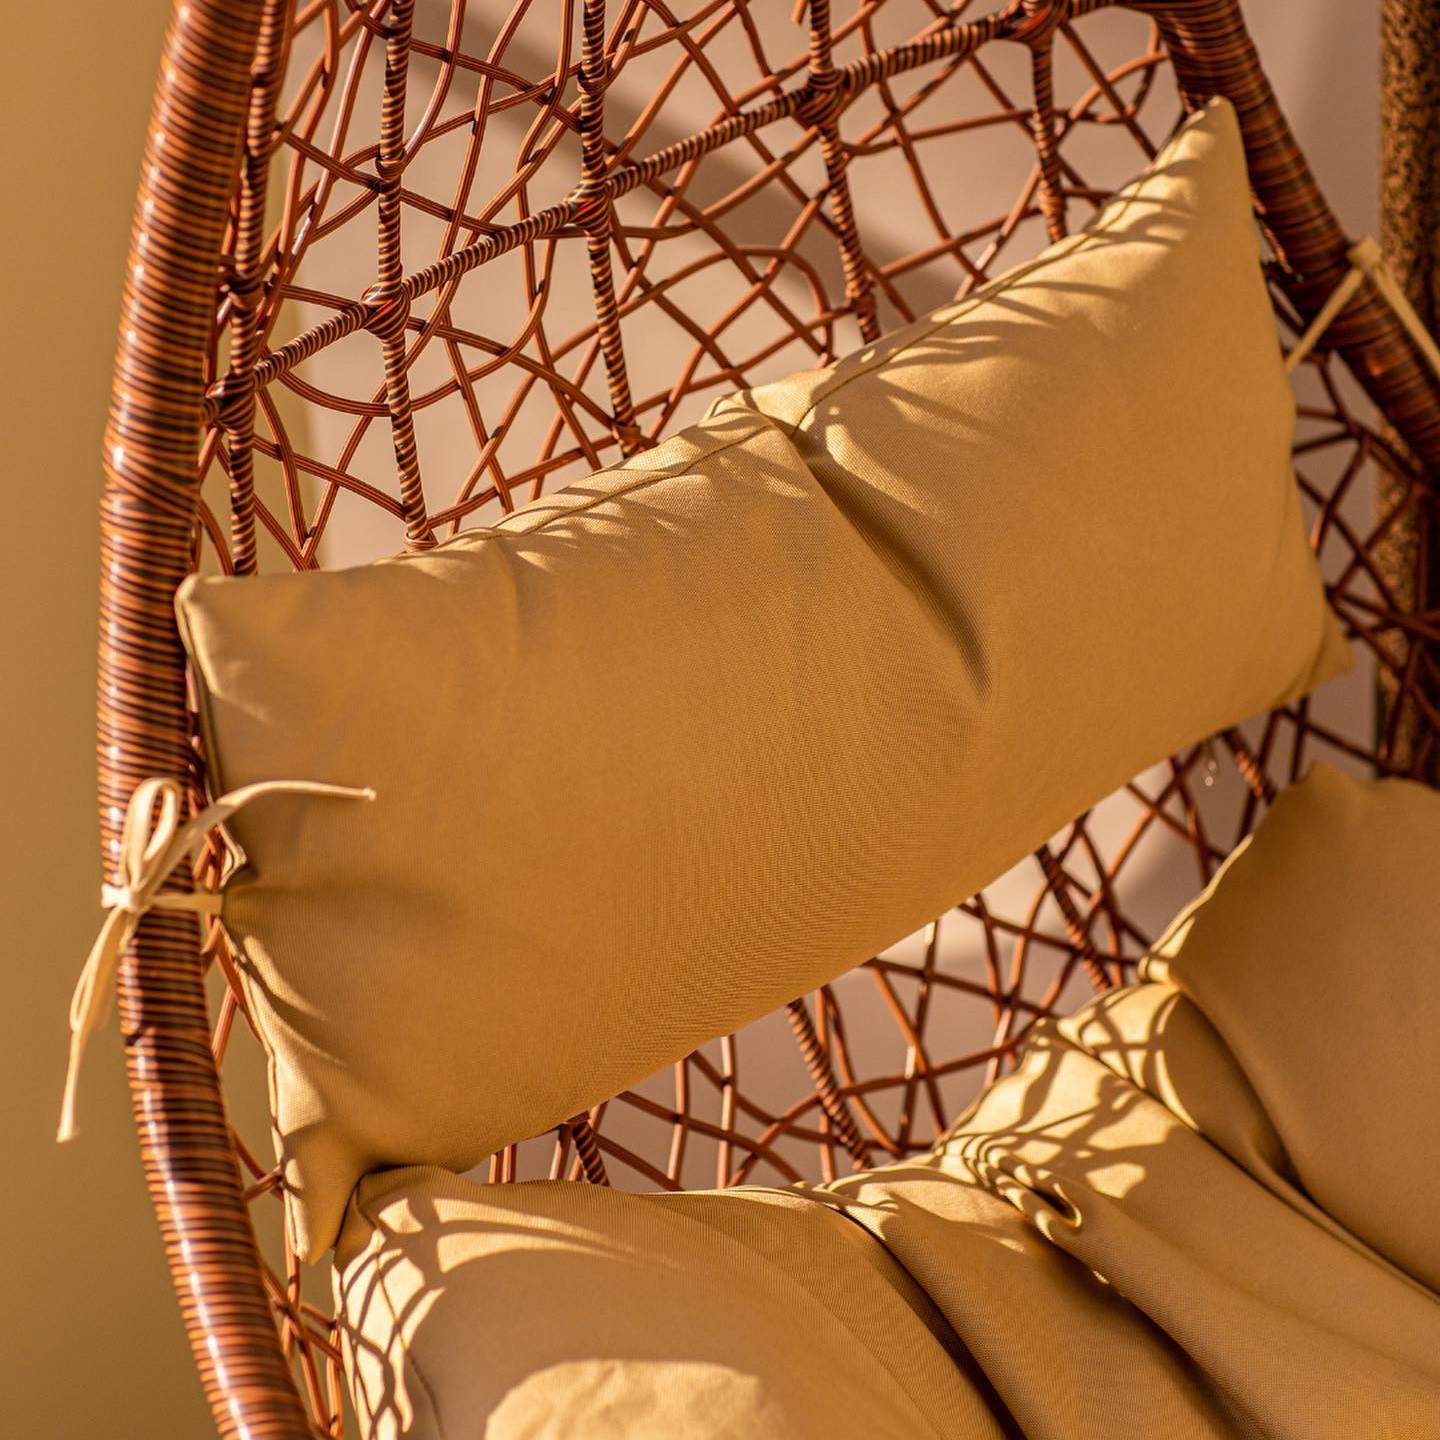 Кресло подвесное Art and craft furniture коричневое, цвет коричневый - фото 9